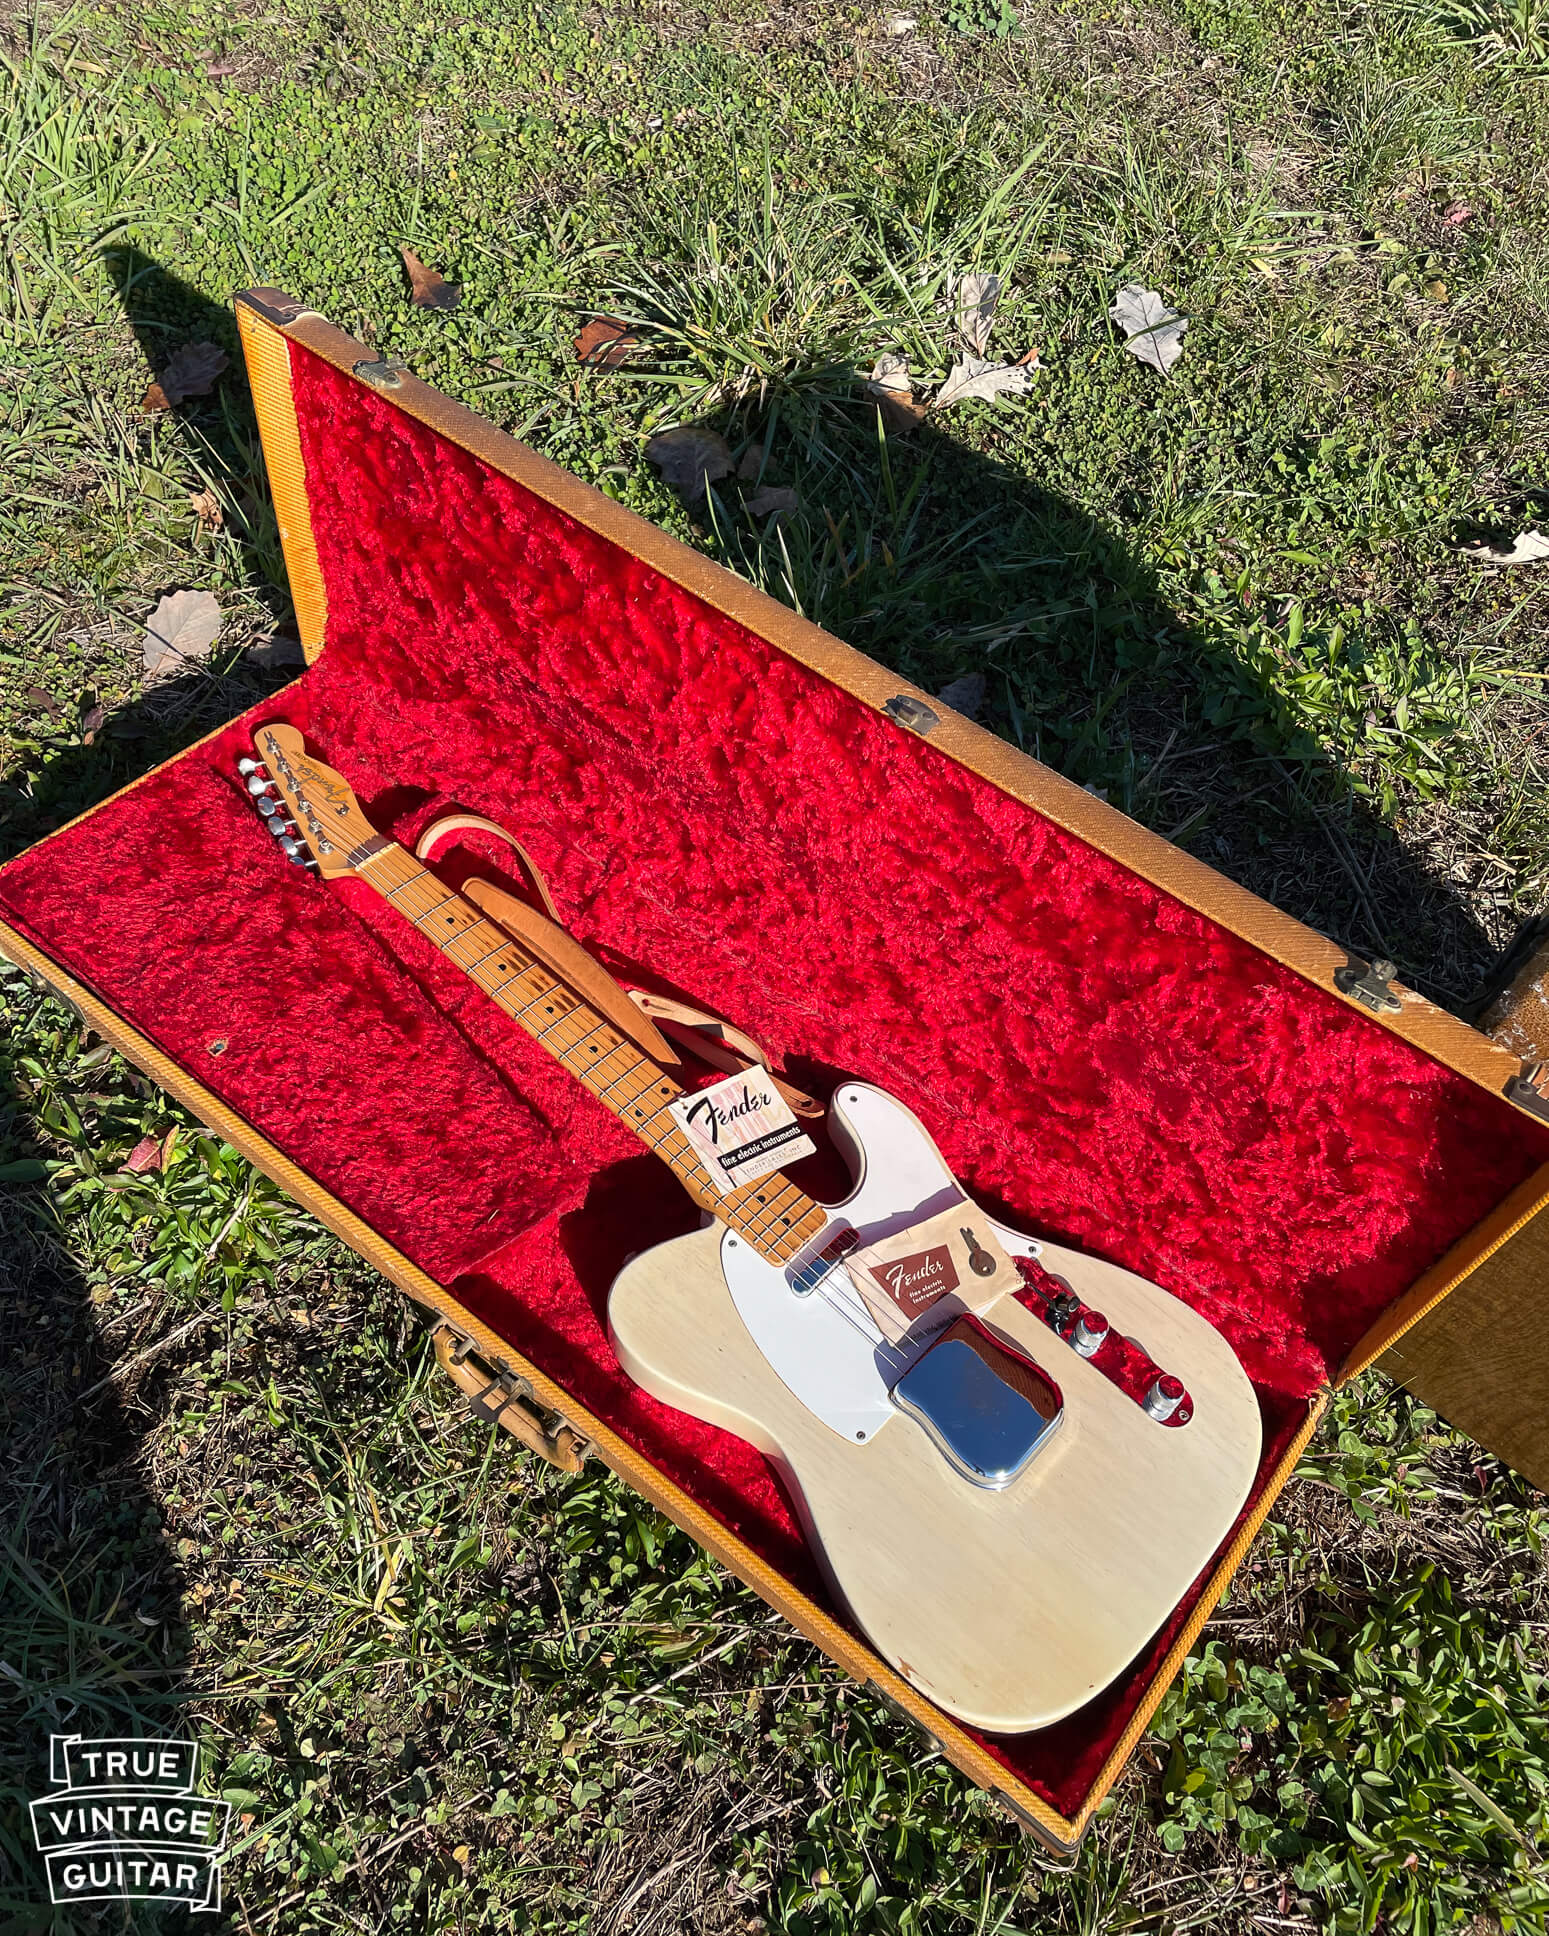 Vintage Fender Telecaster guitar 1950s